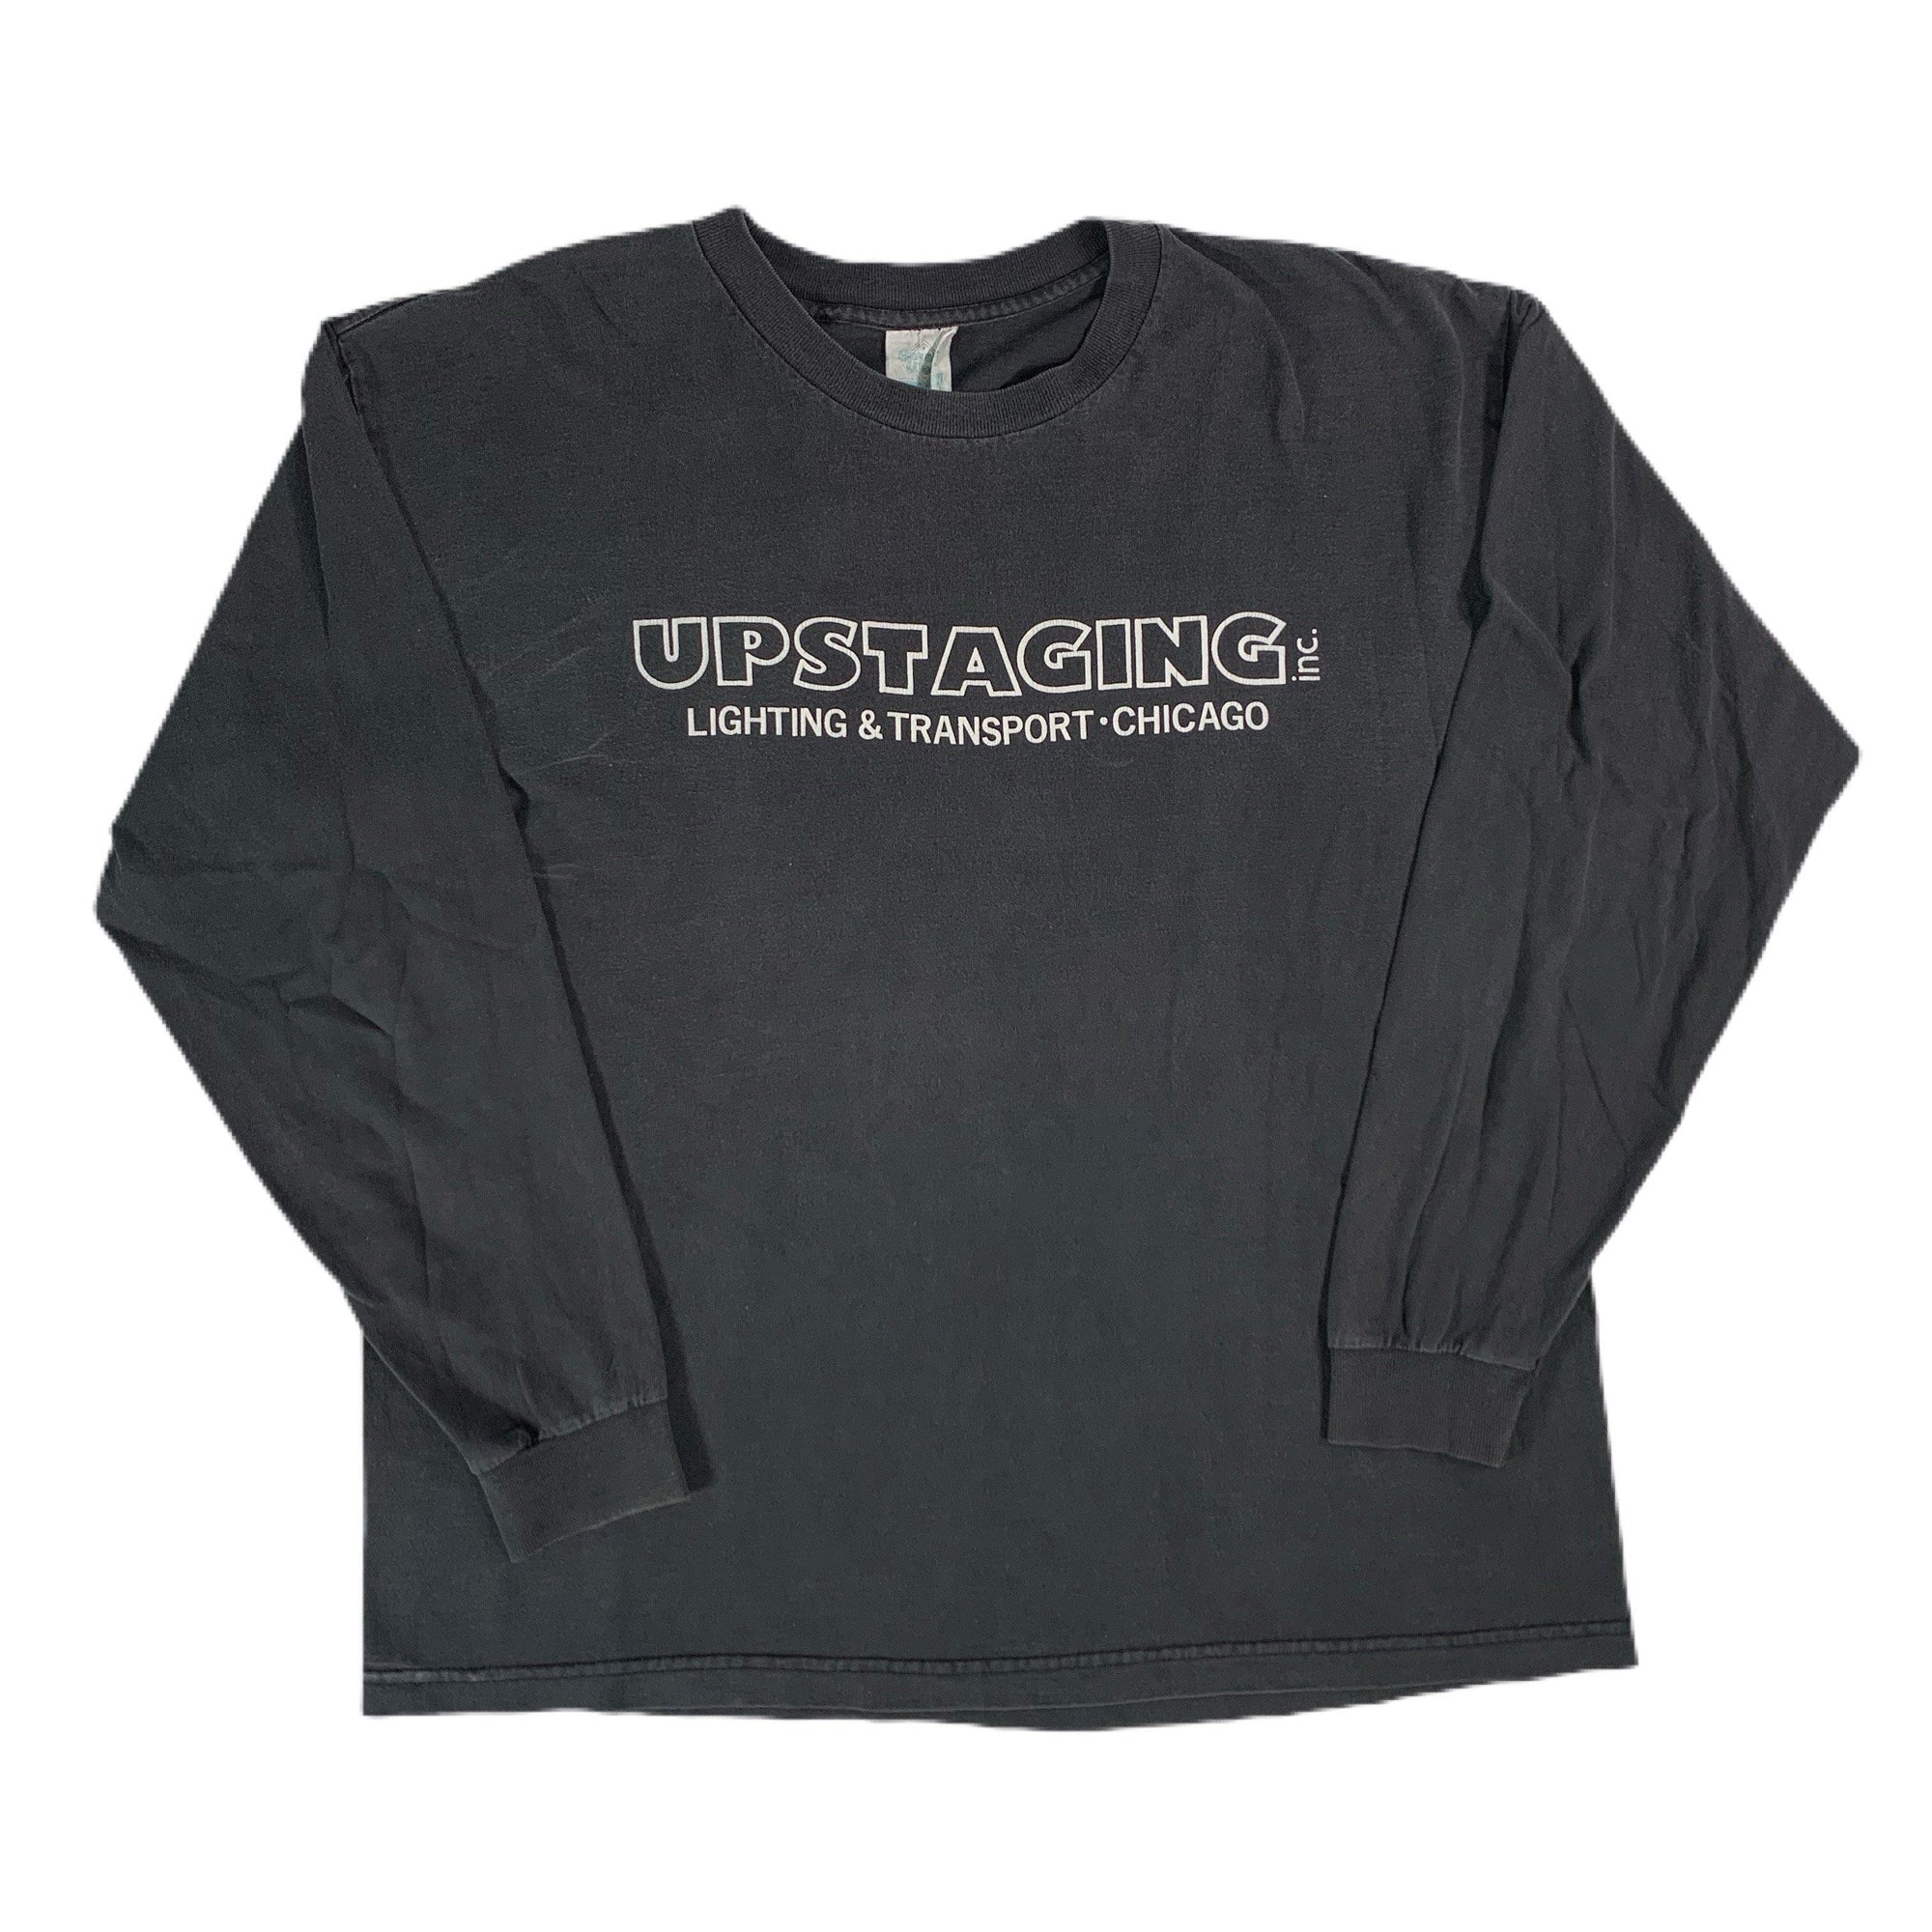 Vintage Iron Maiden 1995 "Upstaging" Long Sleeve Shirt - jointcustodydc